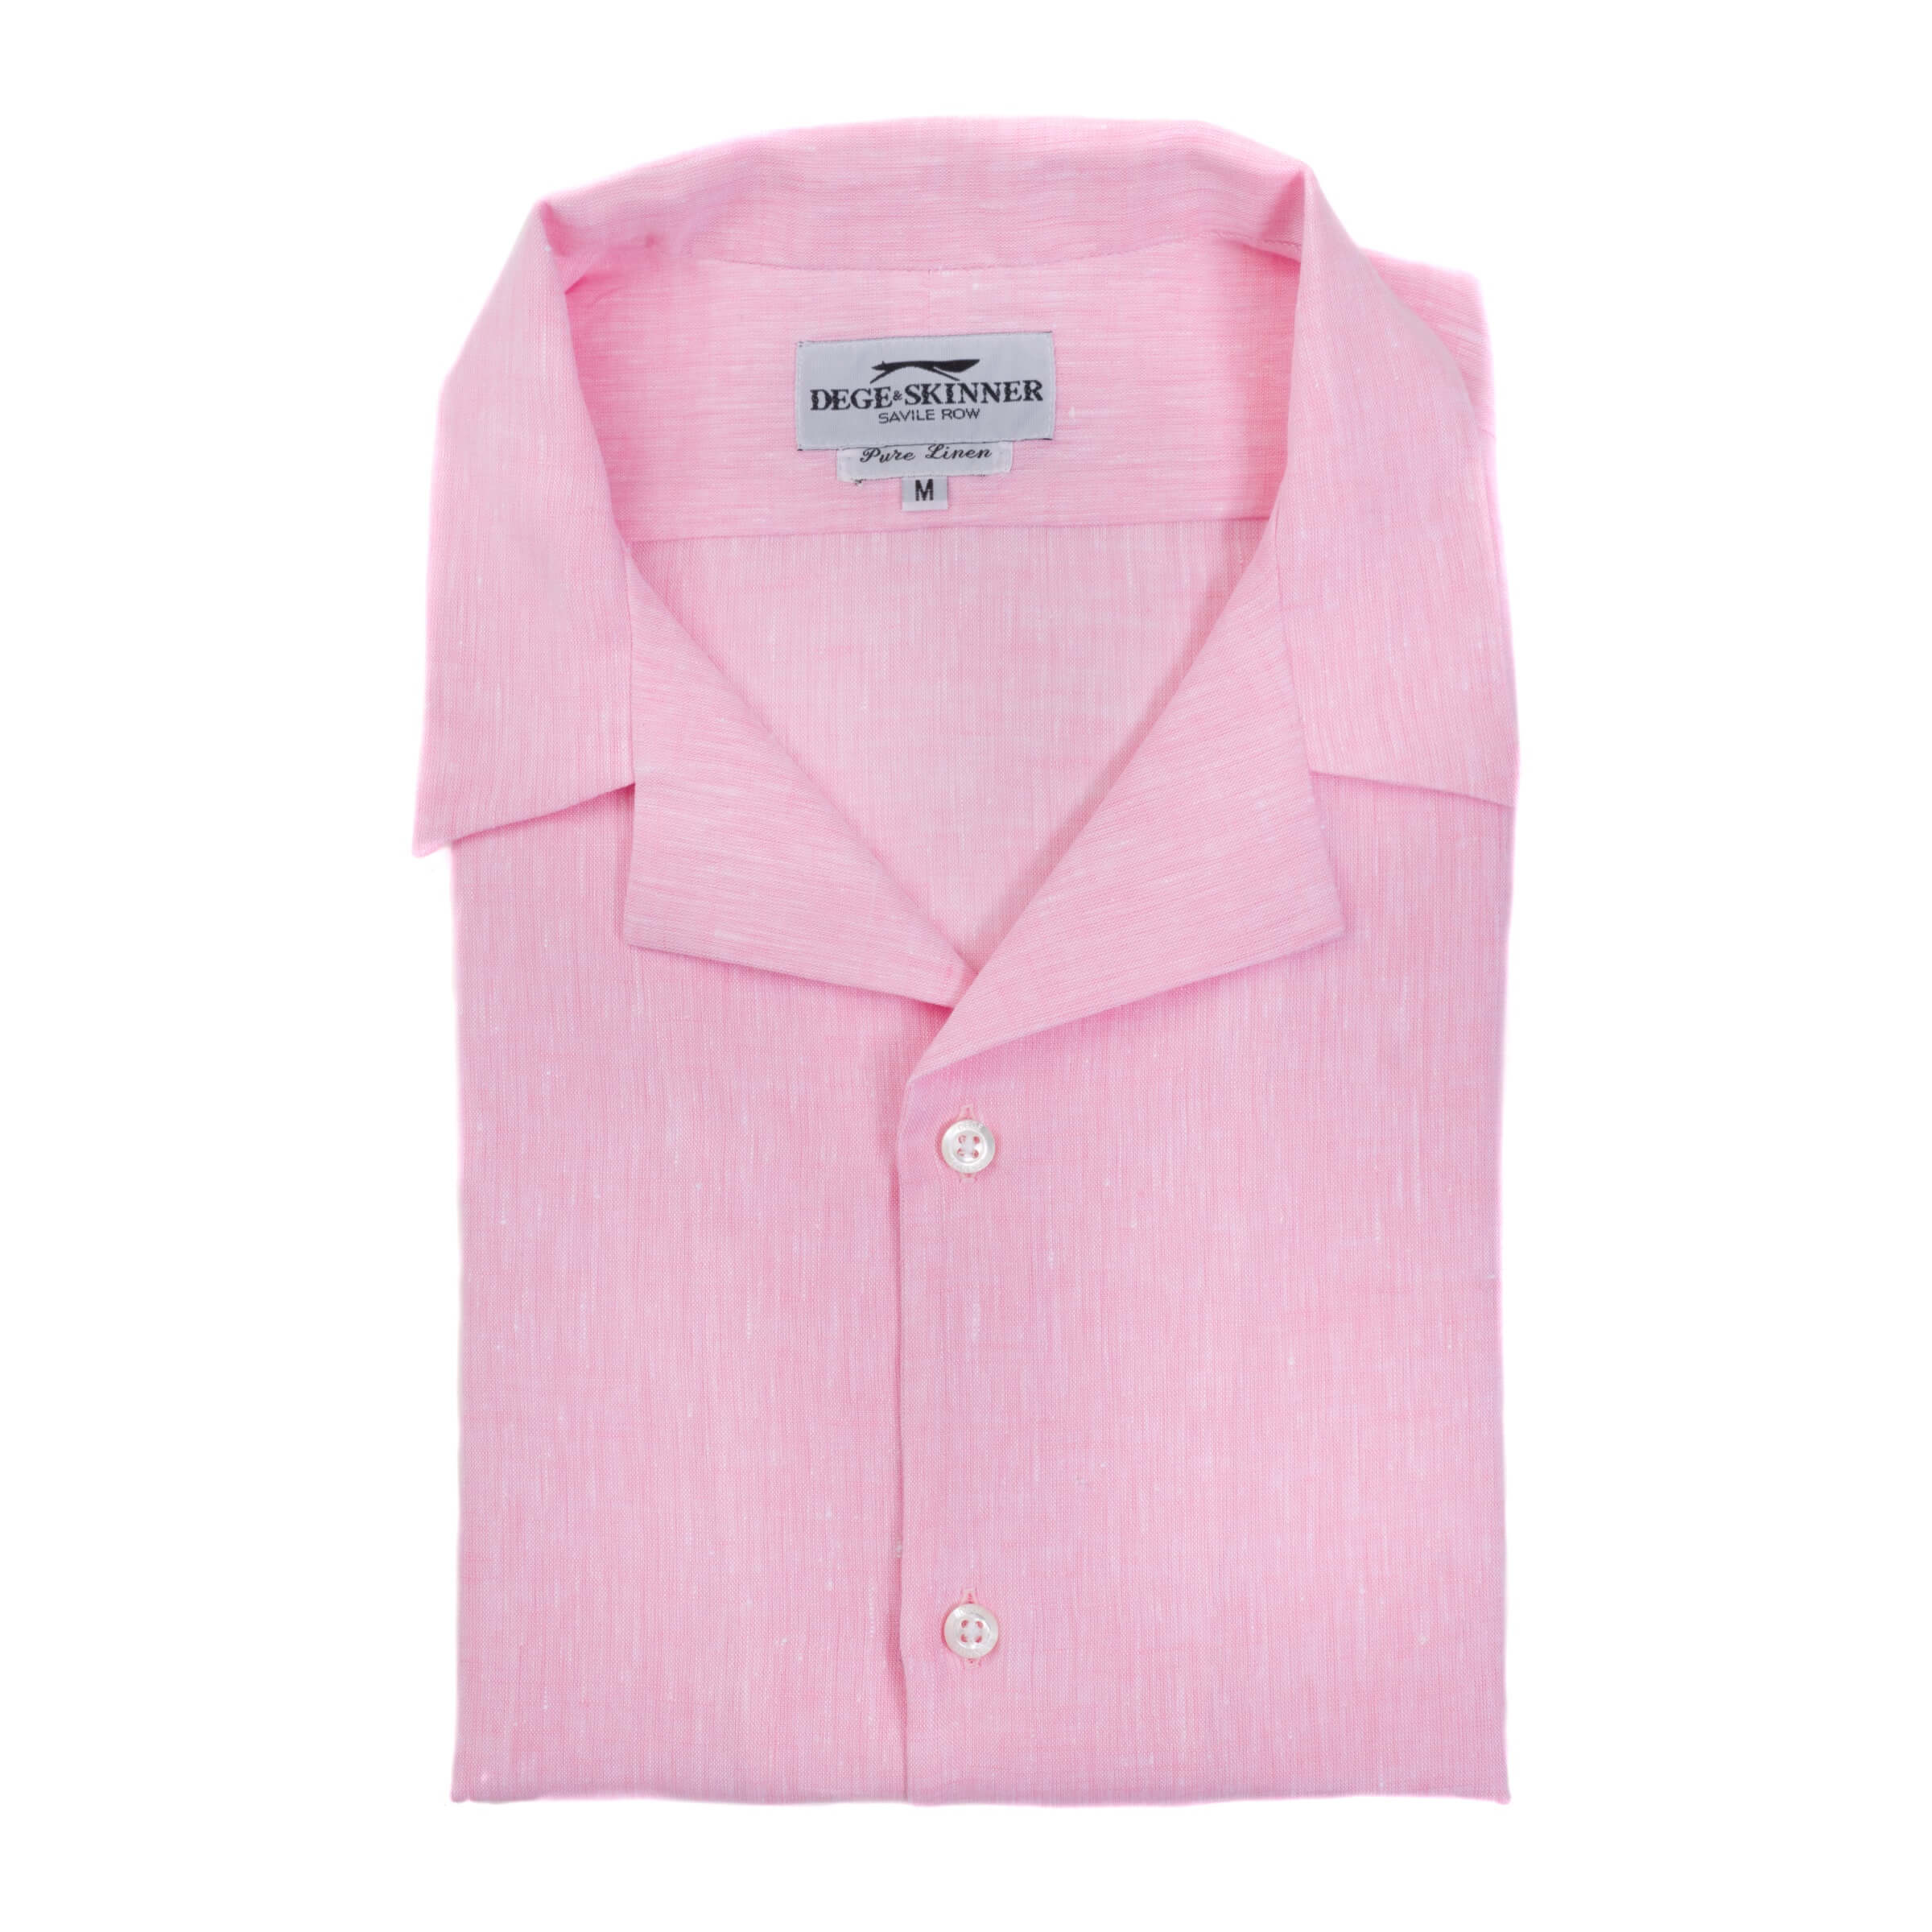 Blush Pink Linen Short-Sleeve Shirt - Dege & Skinner